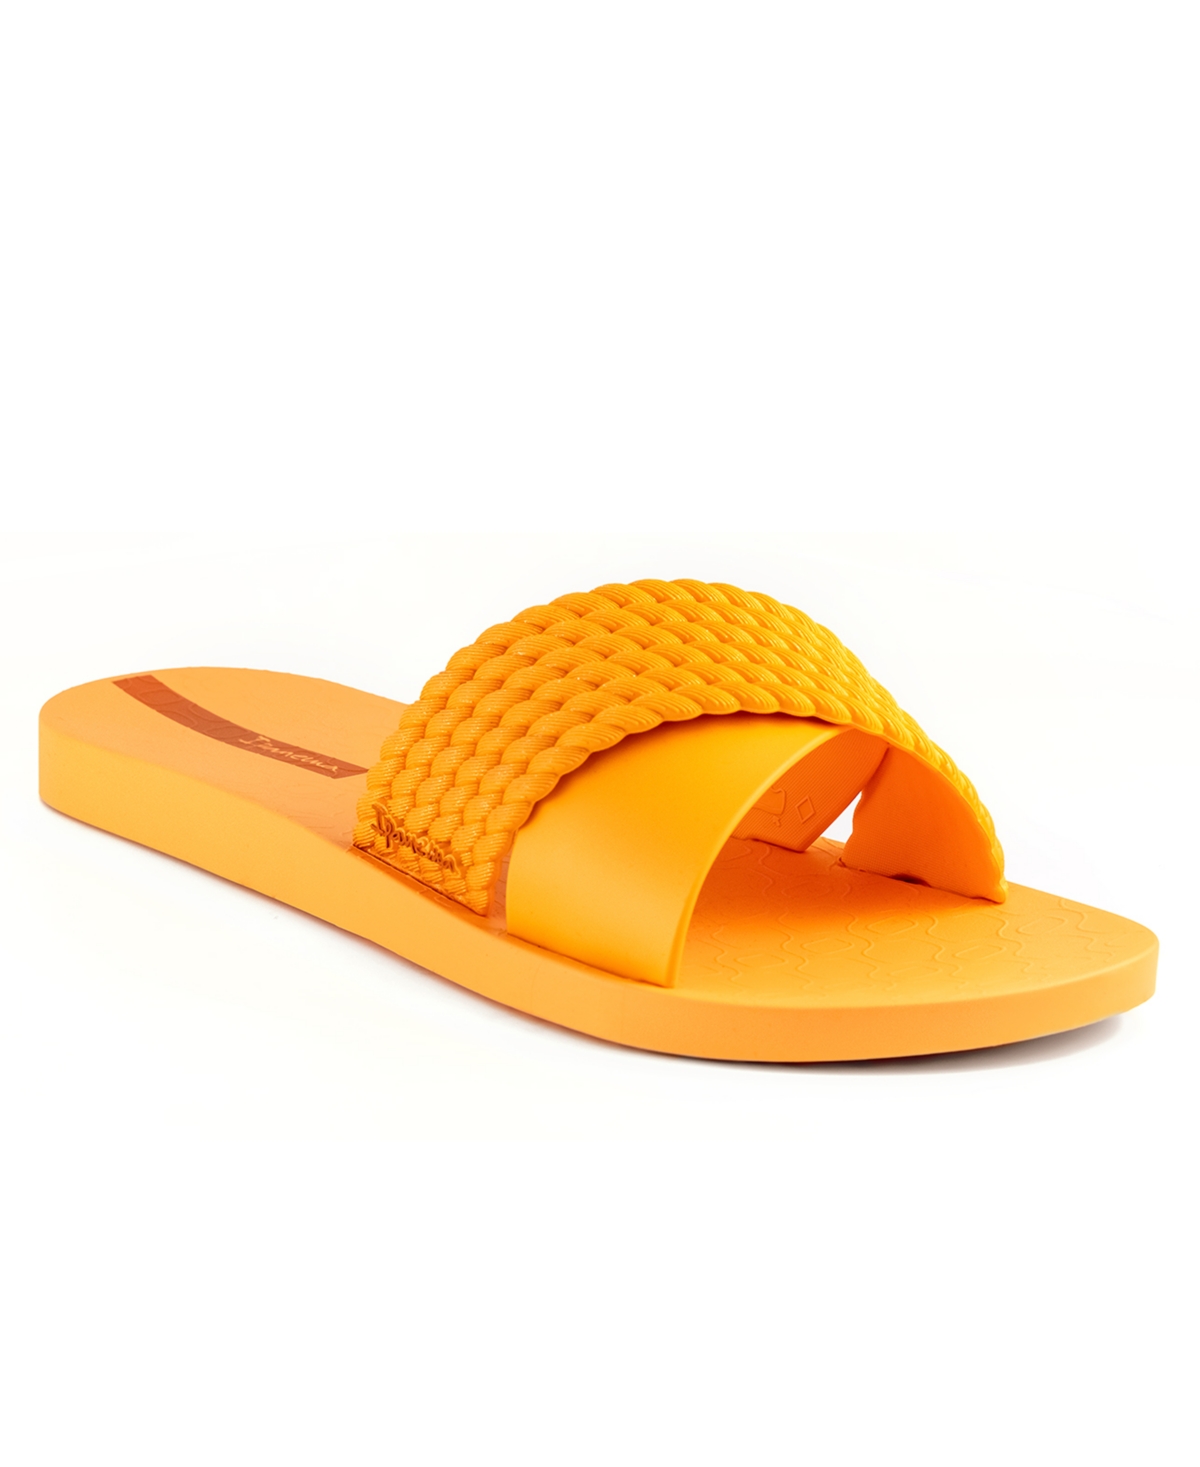 Ipanema Women's Street Ii Water-resistant Slide Sandals Women's Shoes